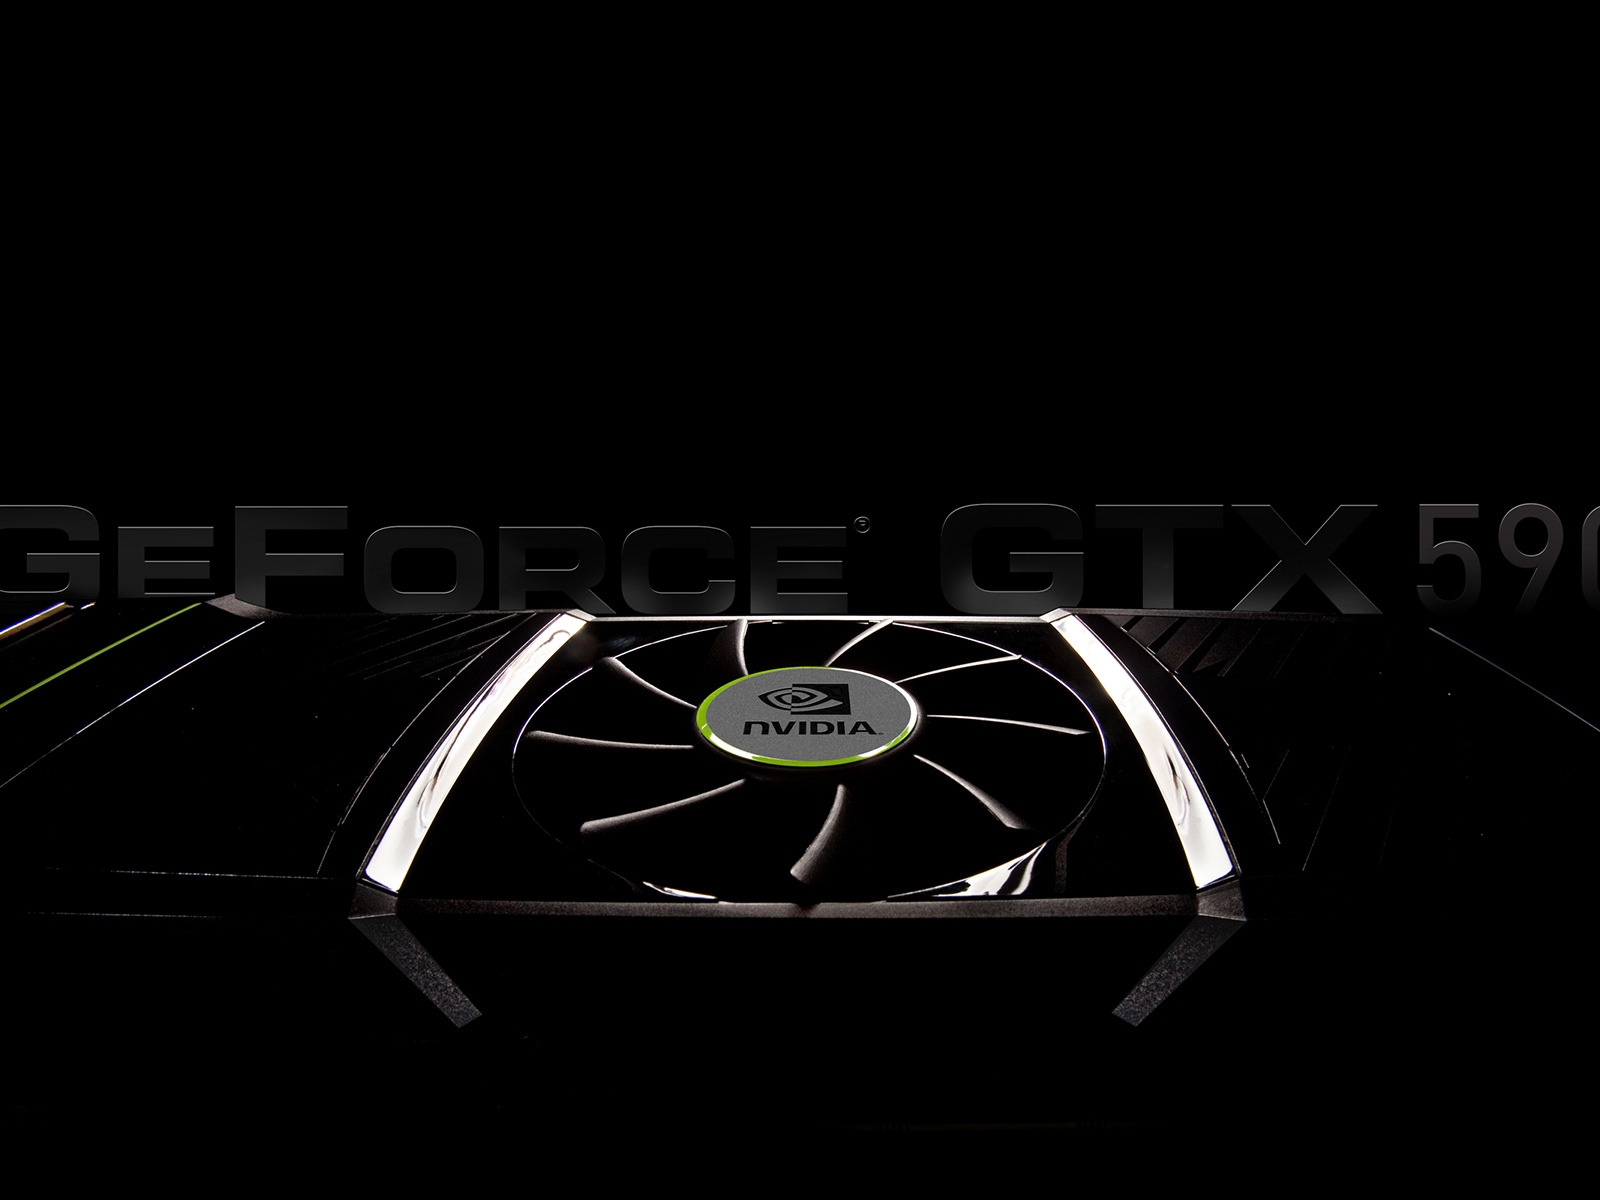 GeForce GTX 590 for 1600 x 1200 resolution